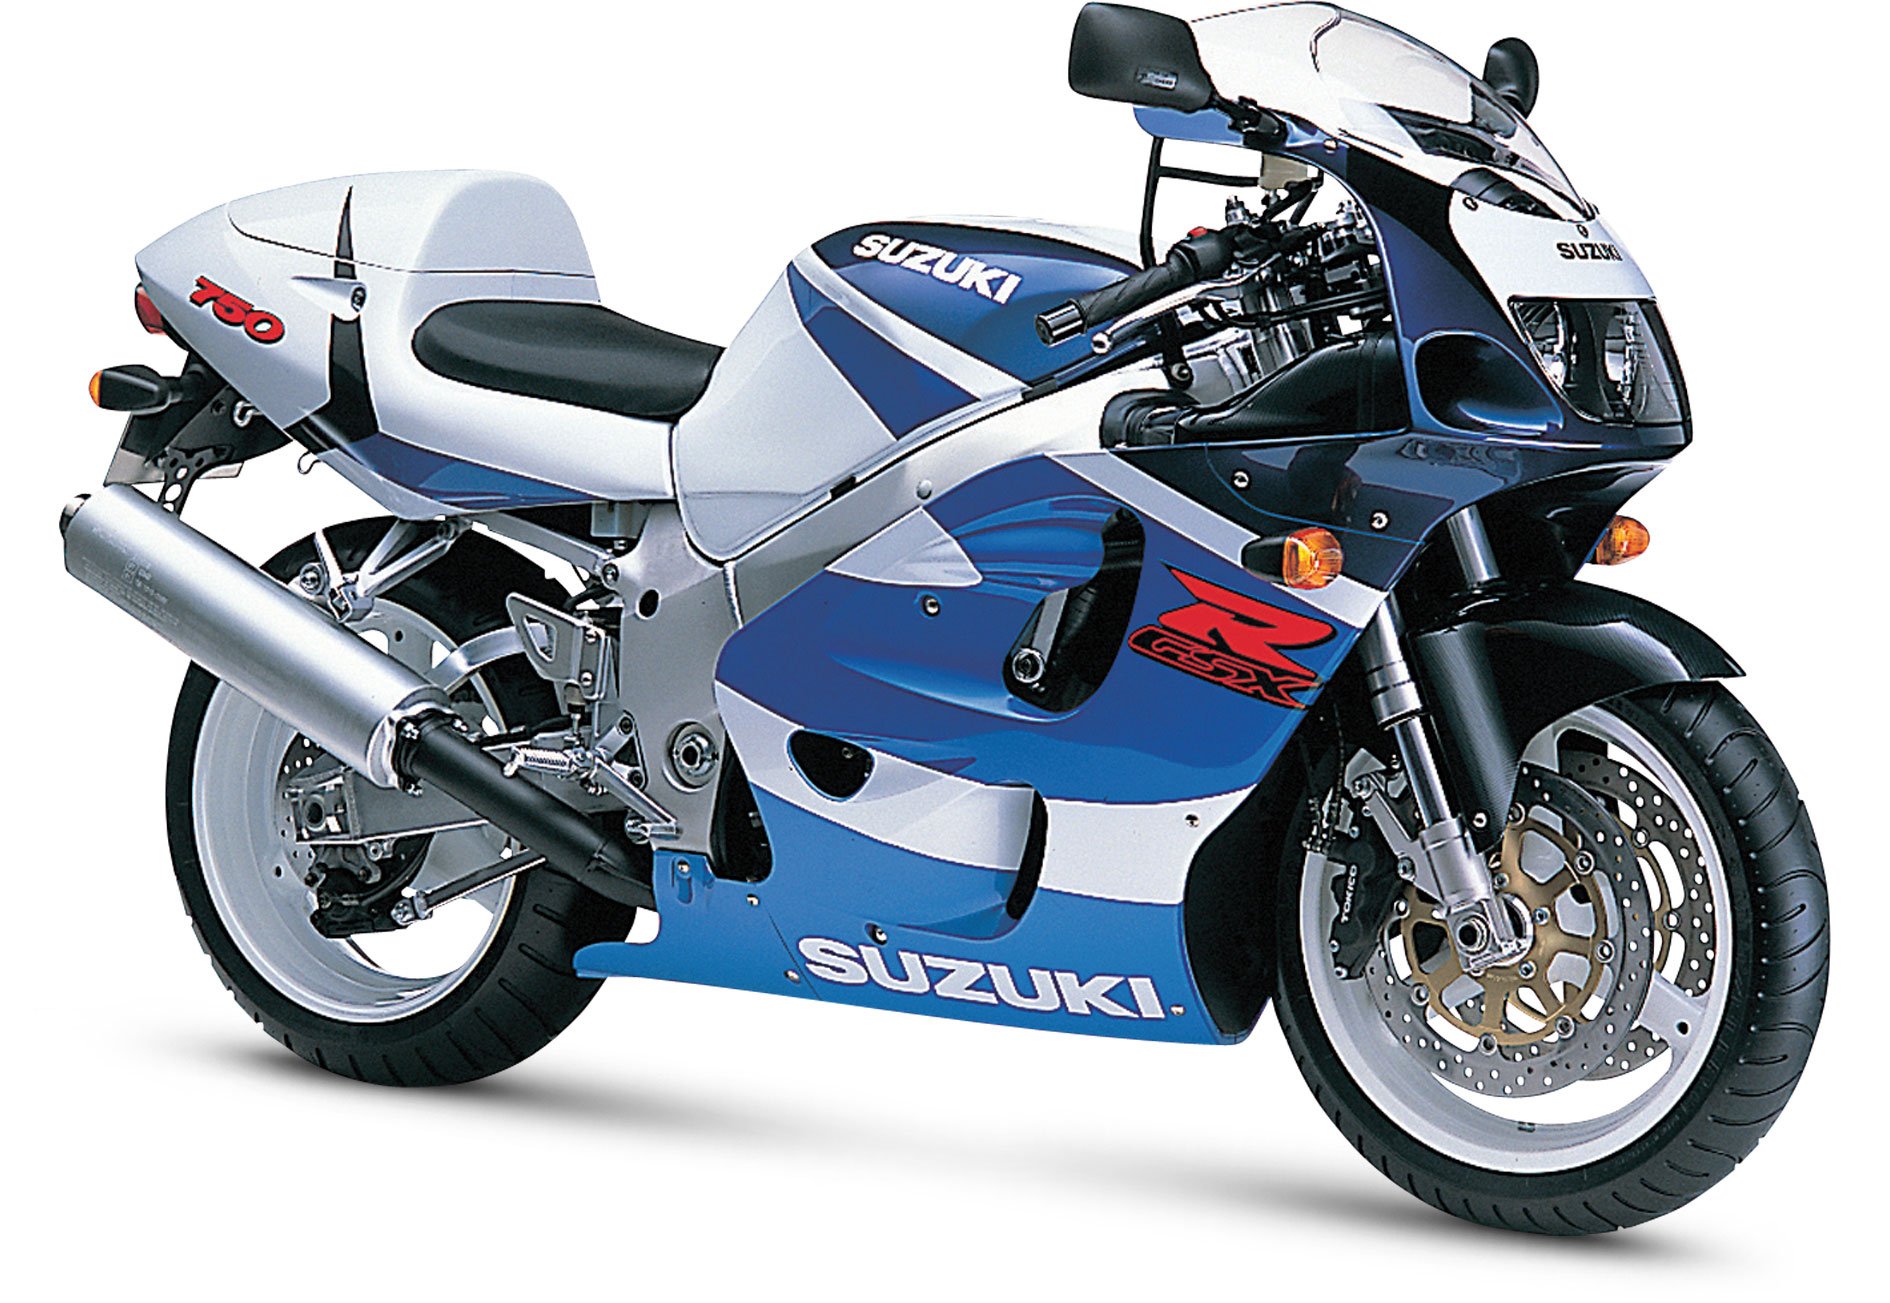 1999, Suzuki, Gsx r750, Motorcycles Wallpaper